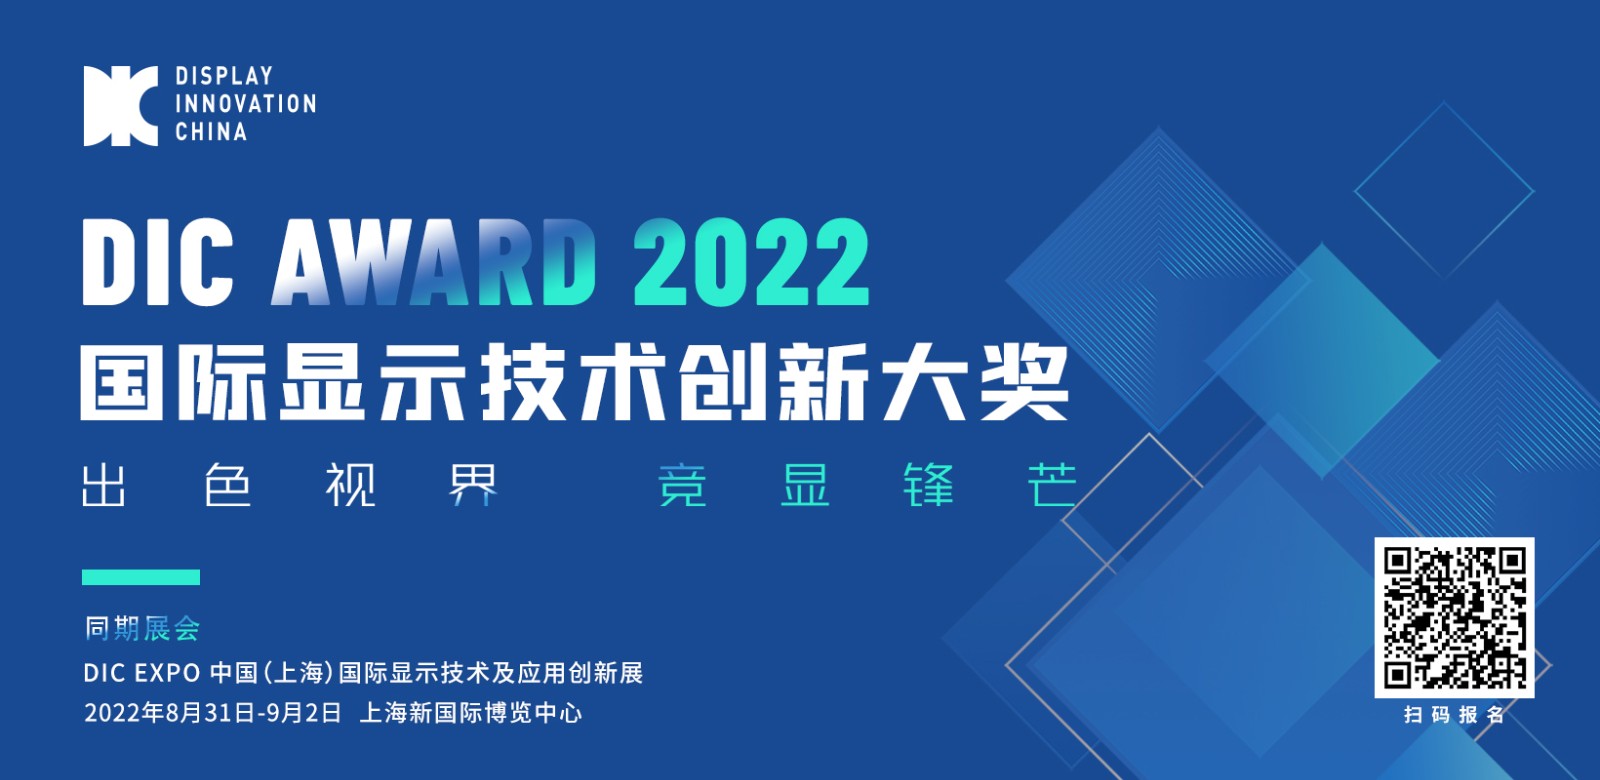 出色视界·竞显锋芒丨DIC AWARD 2022国际显示技术创新大奖申报截止日期调整